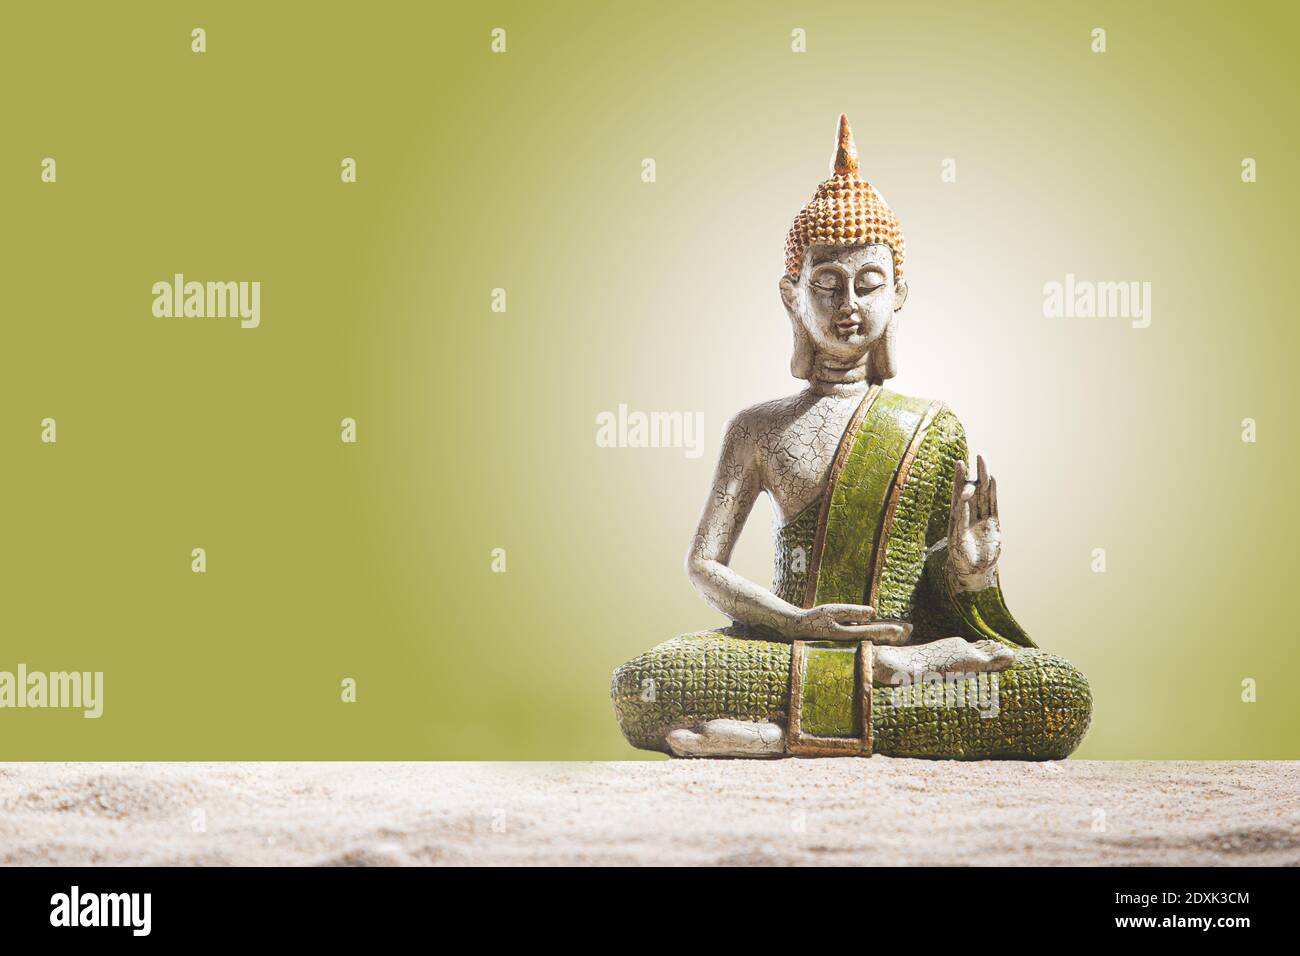 Estatua de Buda verde y dorada, sobre arena de fondo verde. Meditación, espiritualidad y concepto zen. Foto de stock